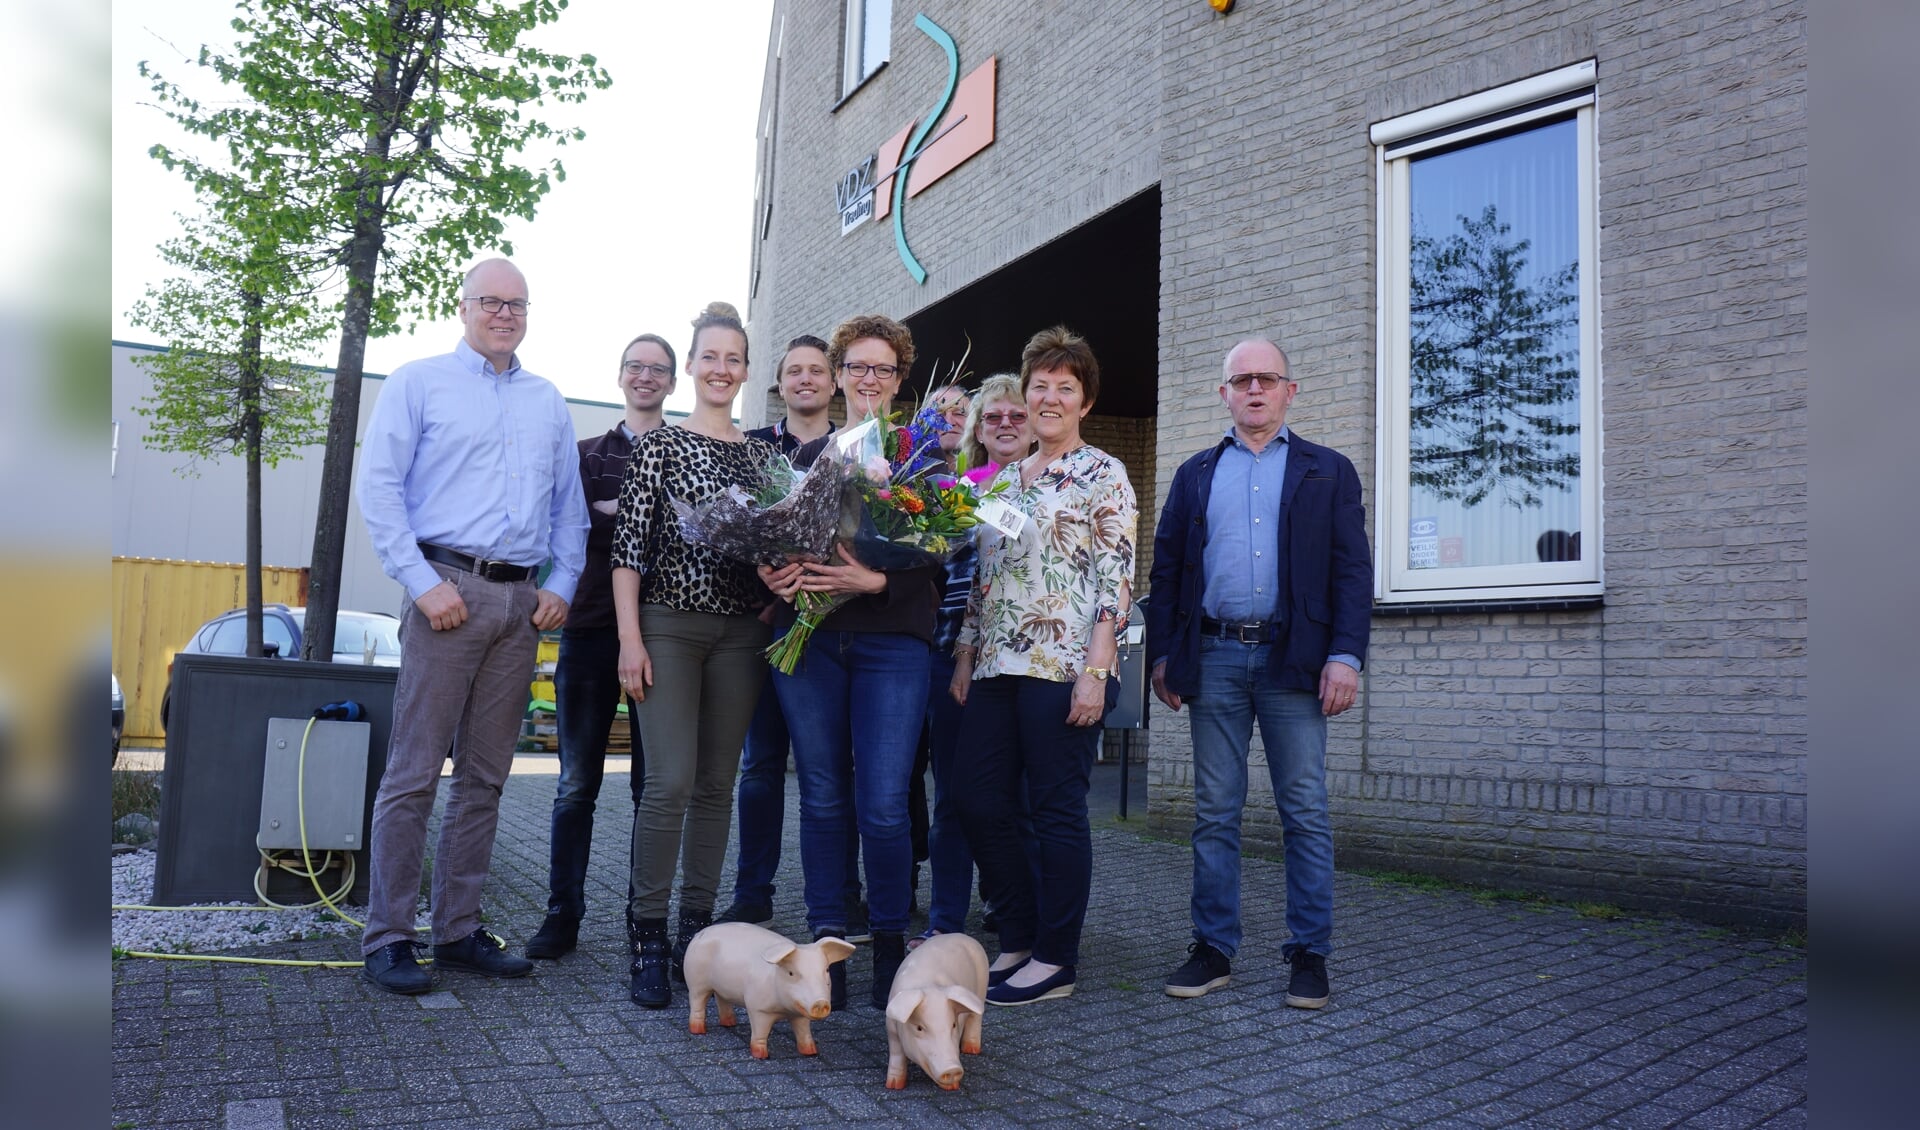 Ingeborg (winnaar 2019) straalt hier met haar collega's. Eigenaar Roel staat er niet bij door een zakenreis.